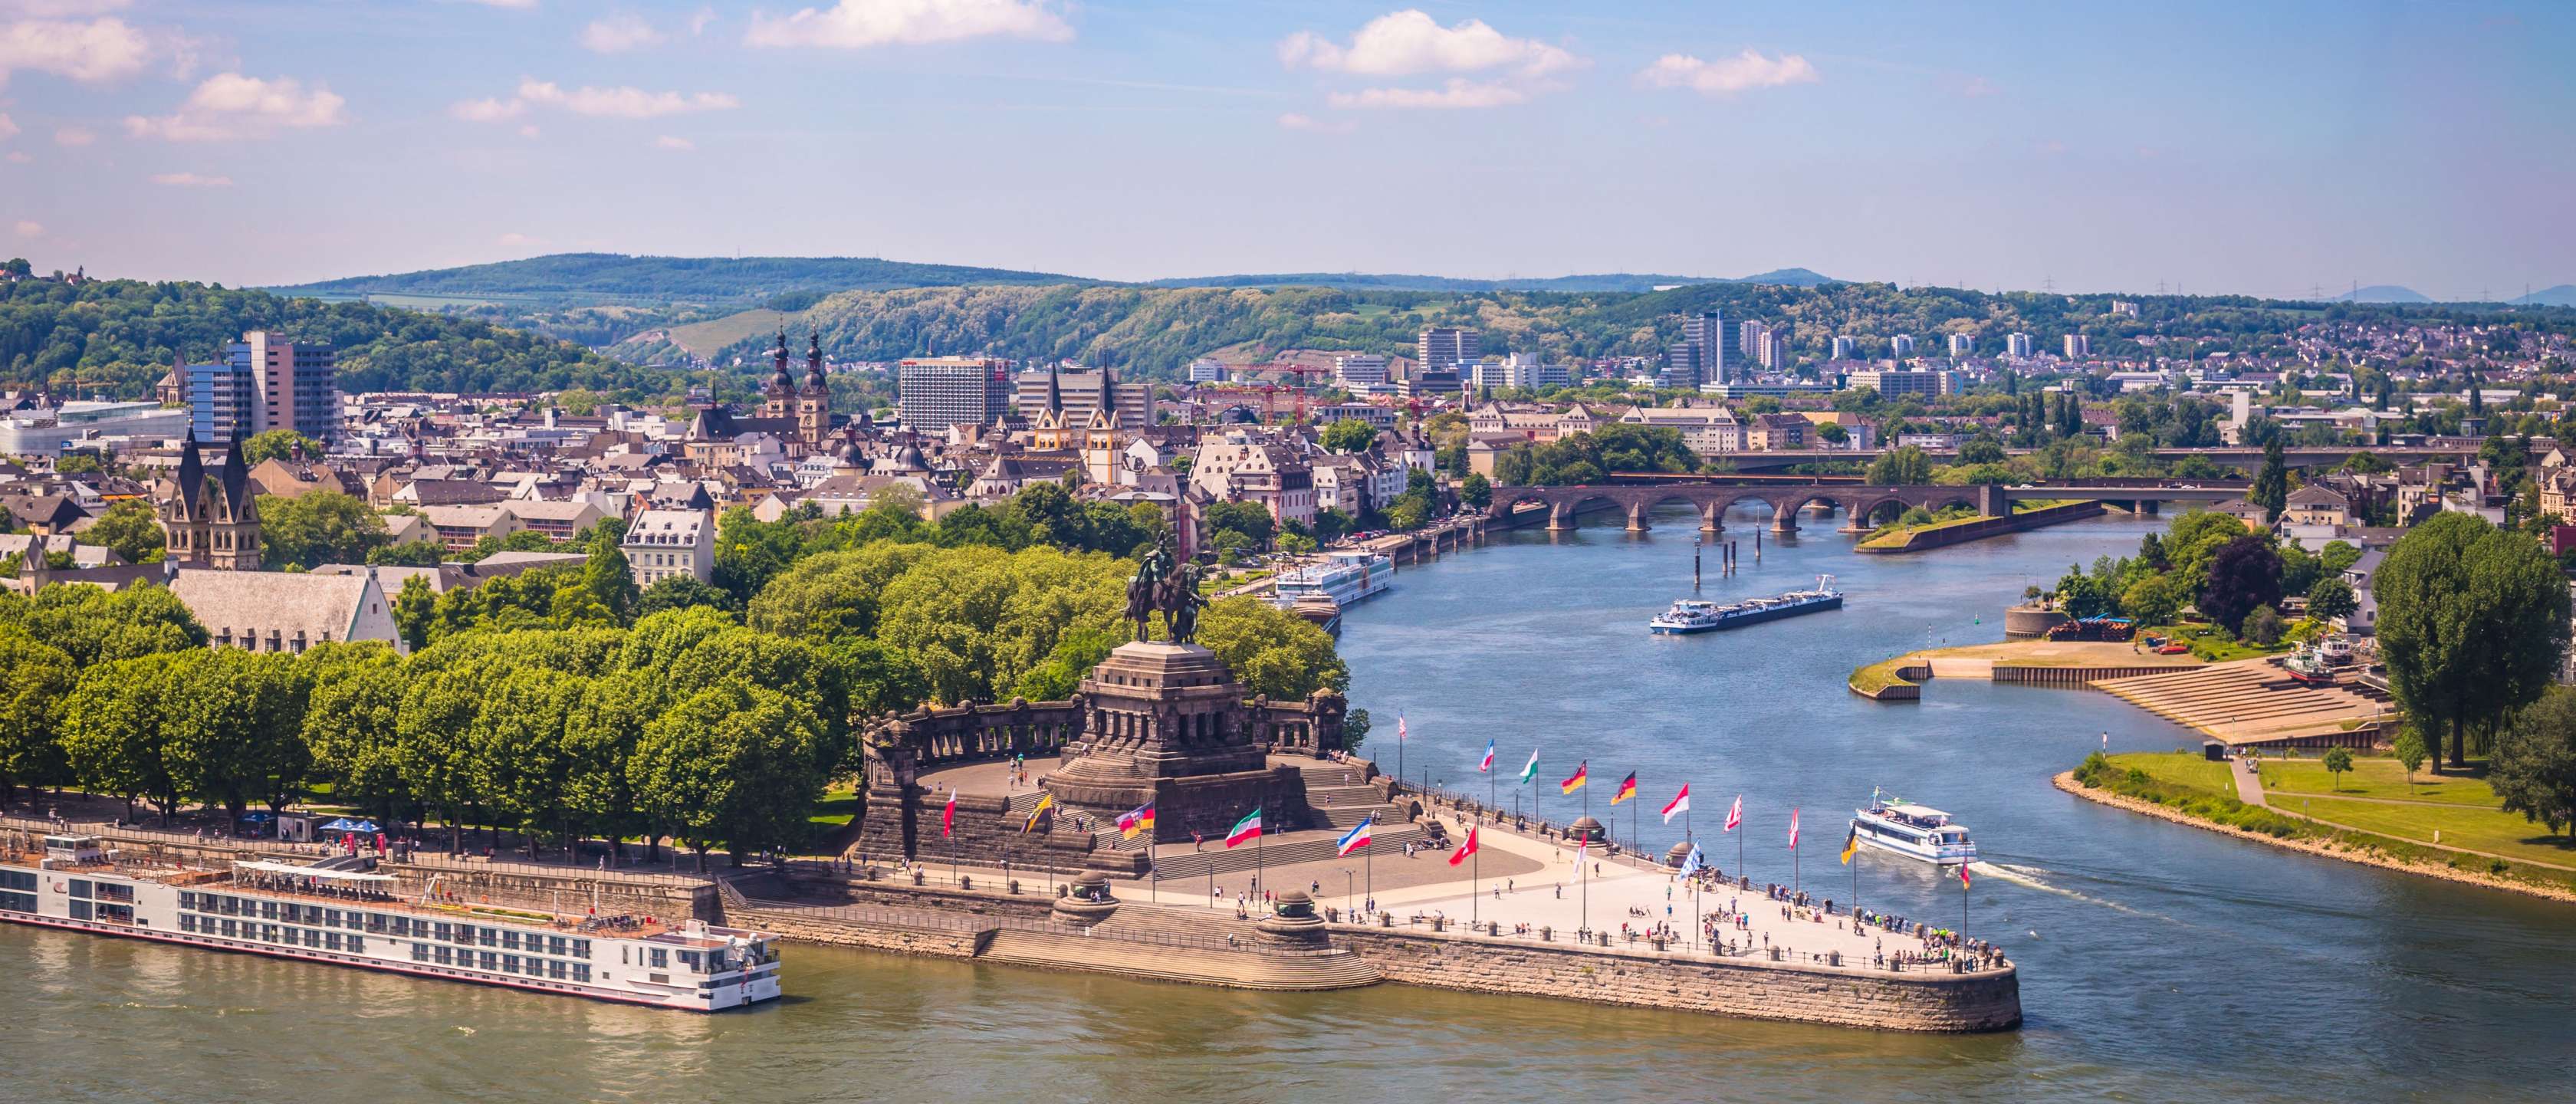 Blick auf den Zusammenfluss von Rhein und Mosel am Deutschen Eck, Koblenz